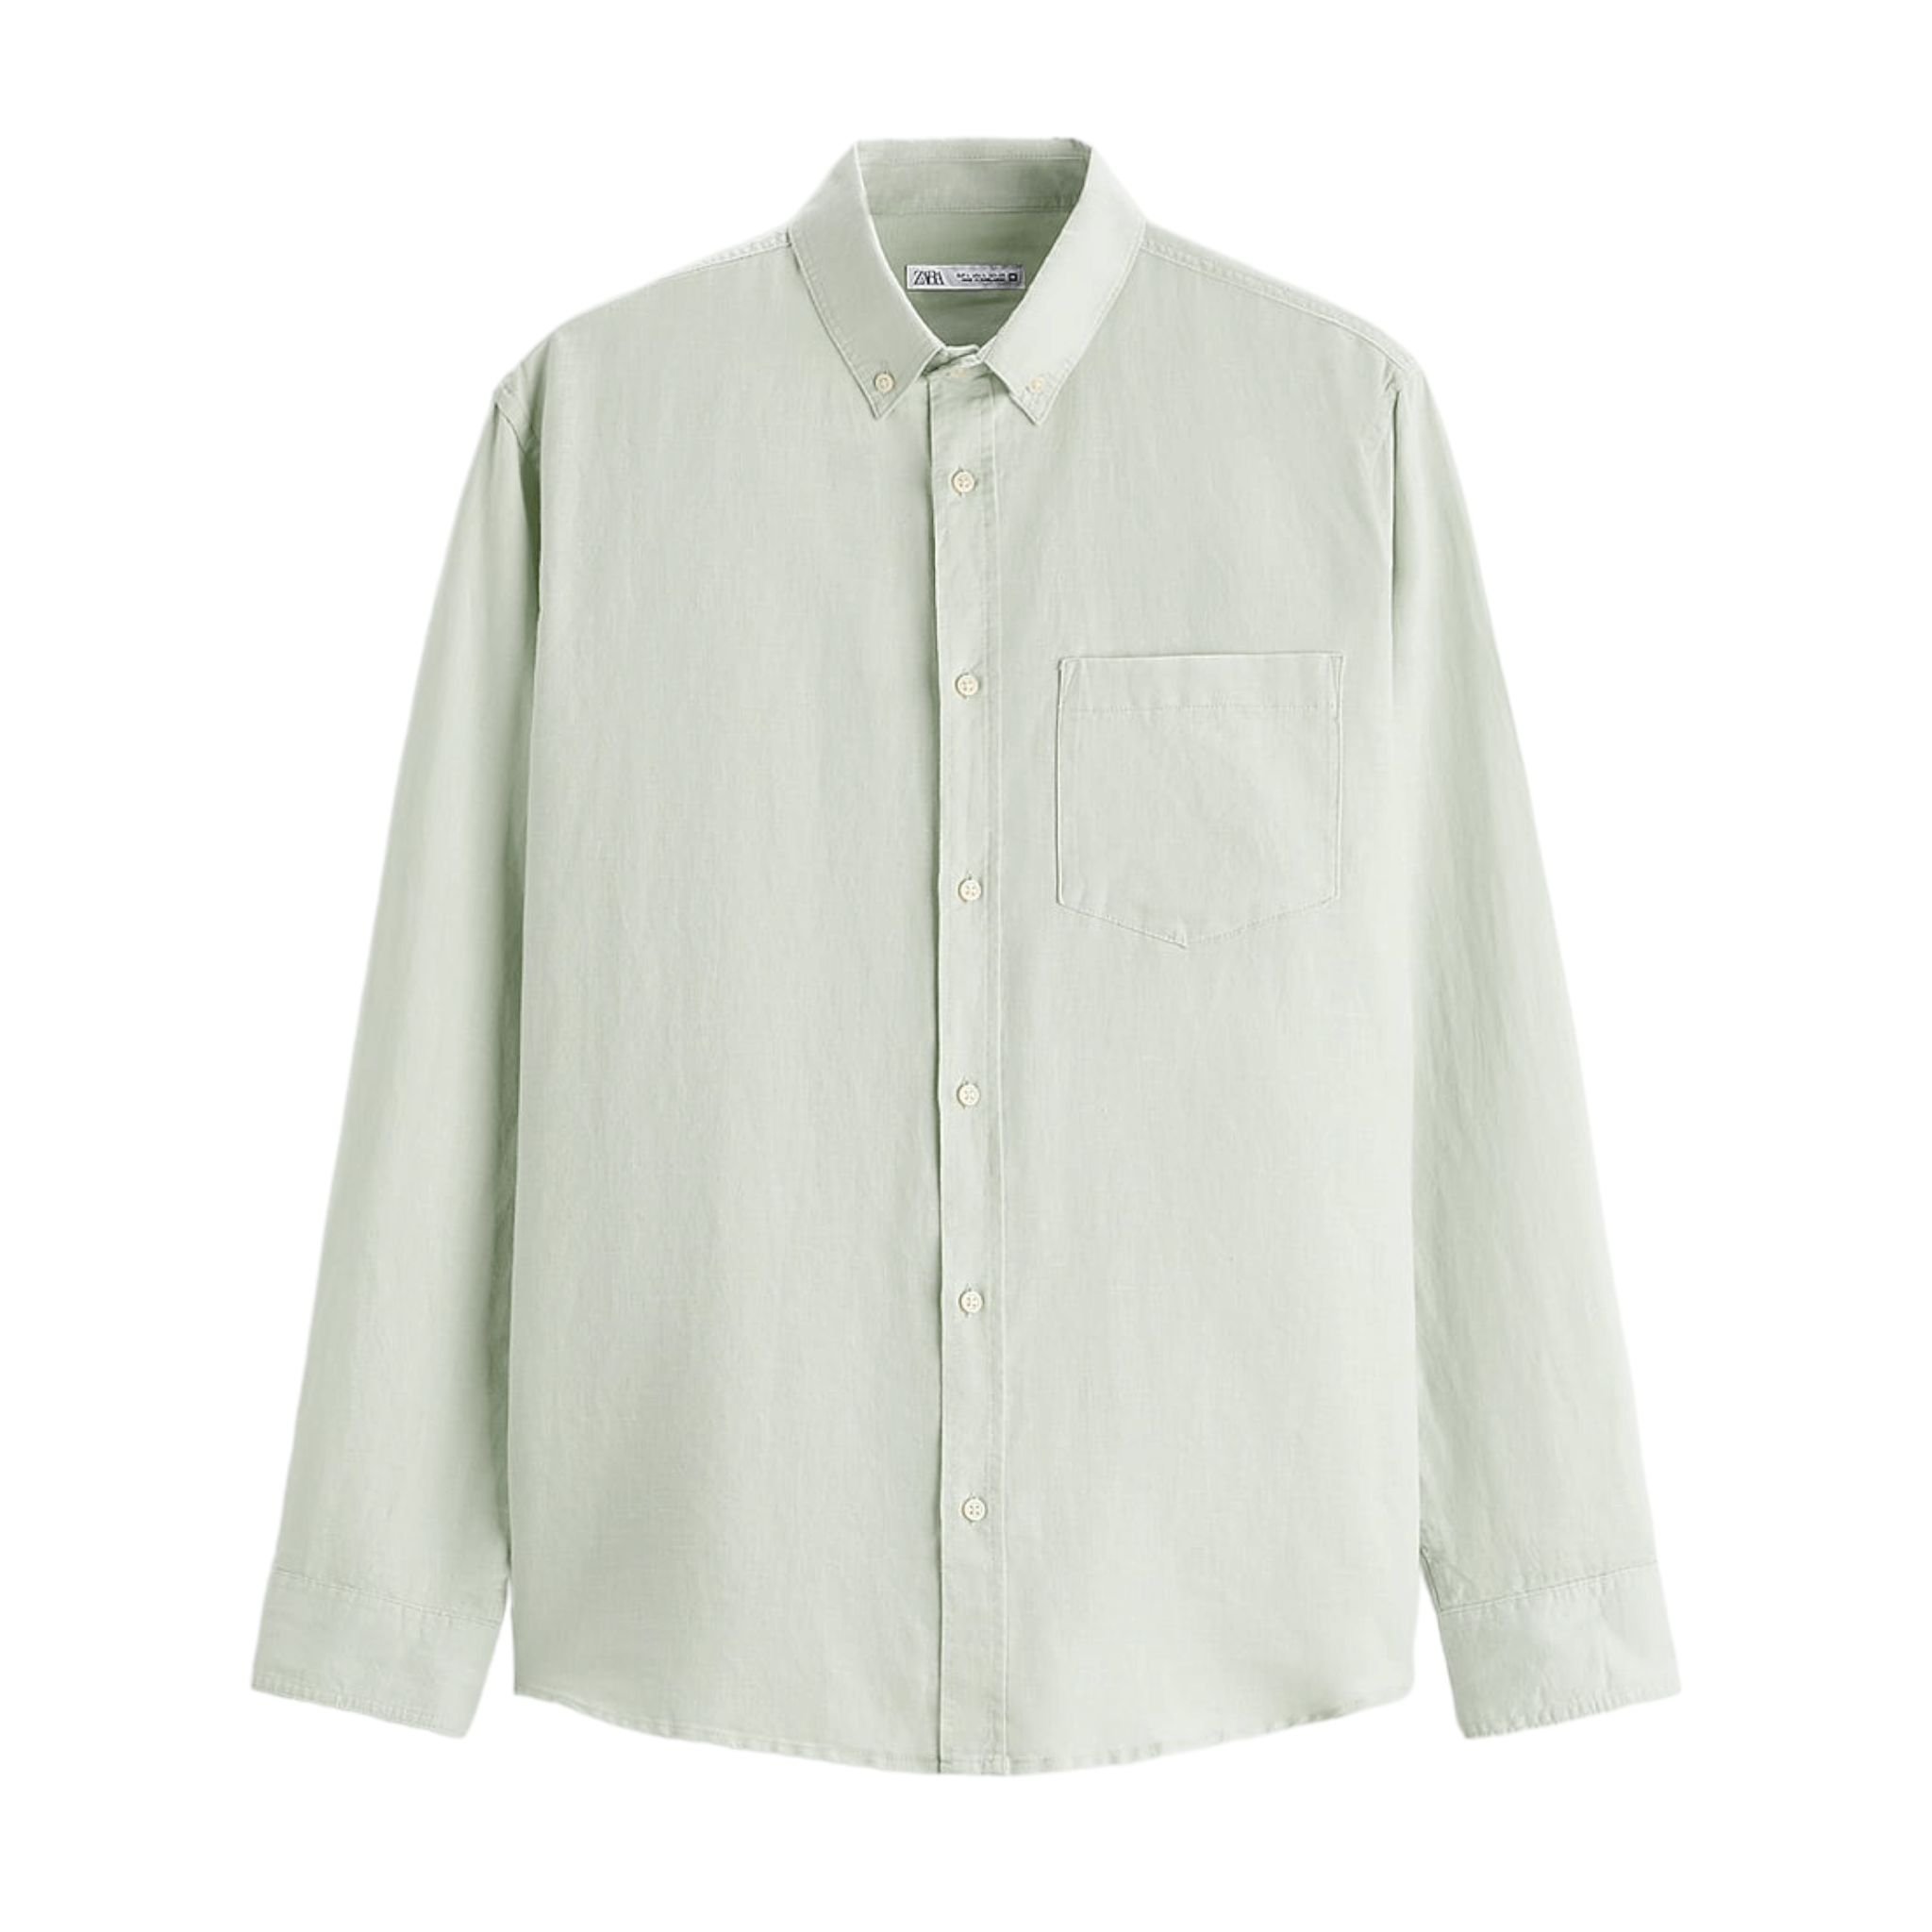 Рубашка Zara Cotton - Linen, светло-зеленый рубашка zara textured linen cotton зеленый